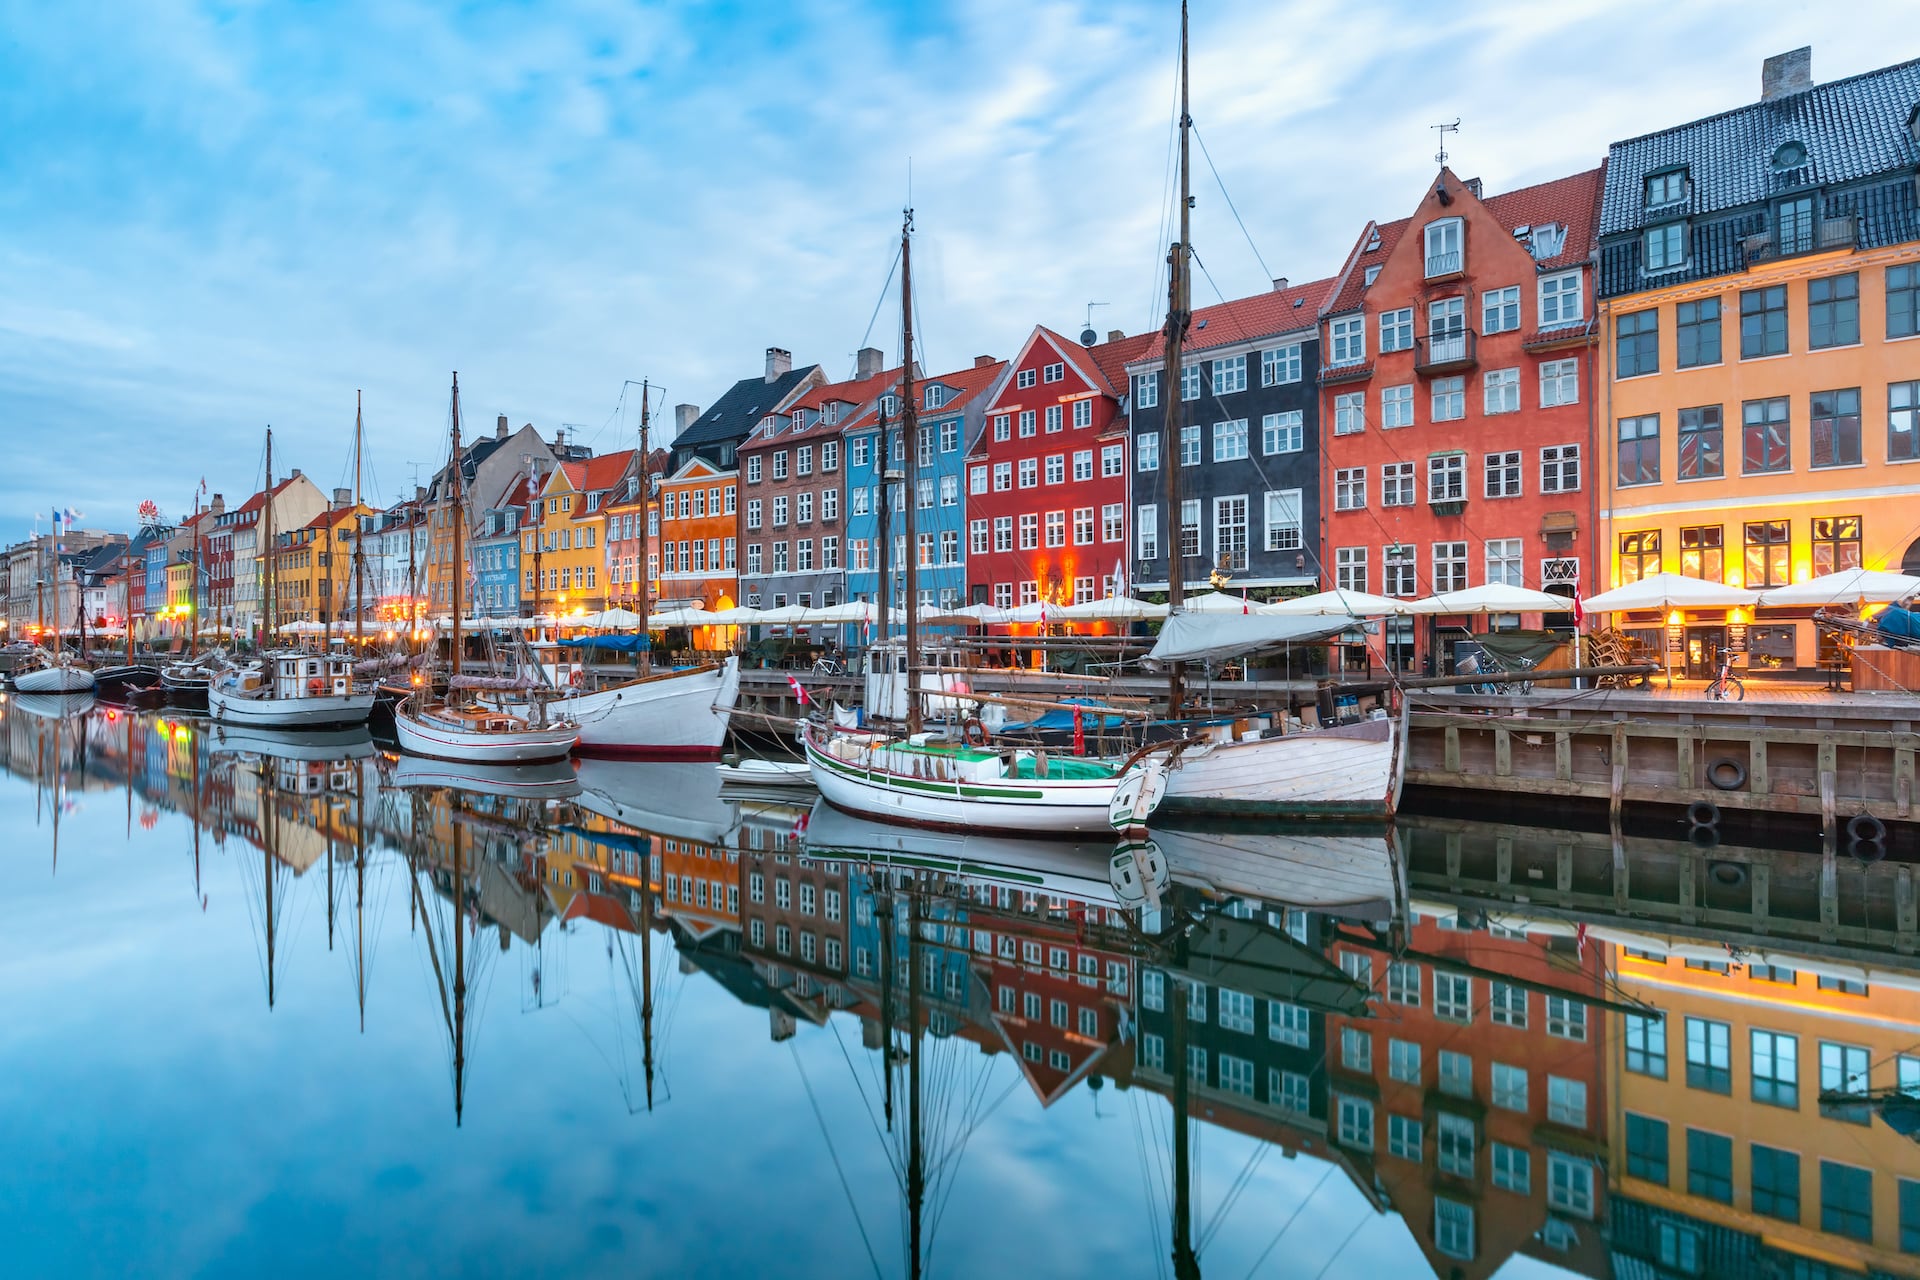 Blick auf die bunten Häuser von Nyhavn in Kopenhagen